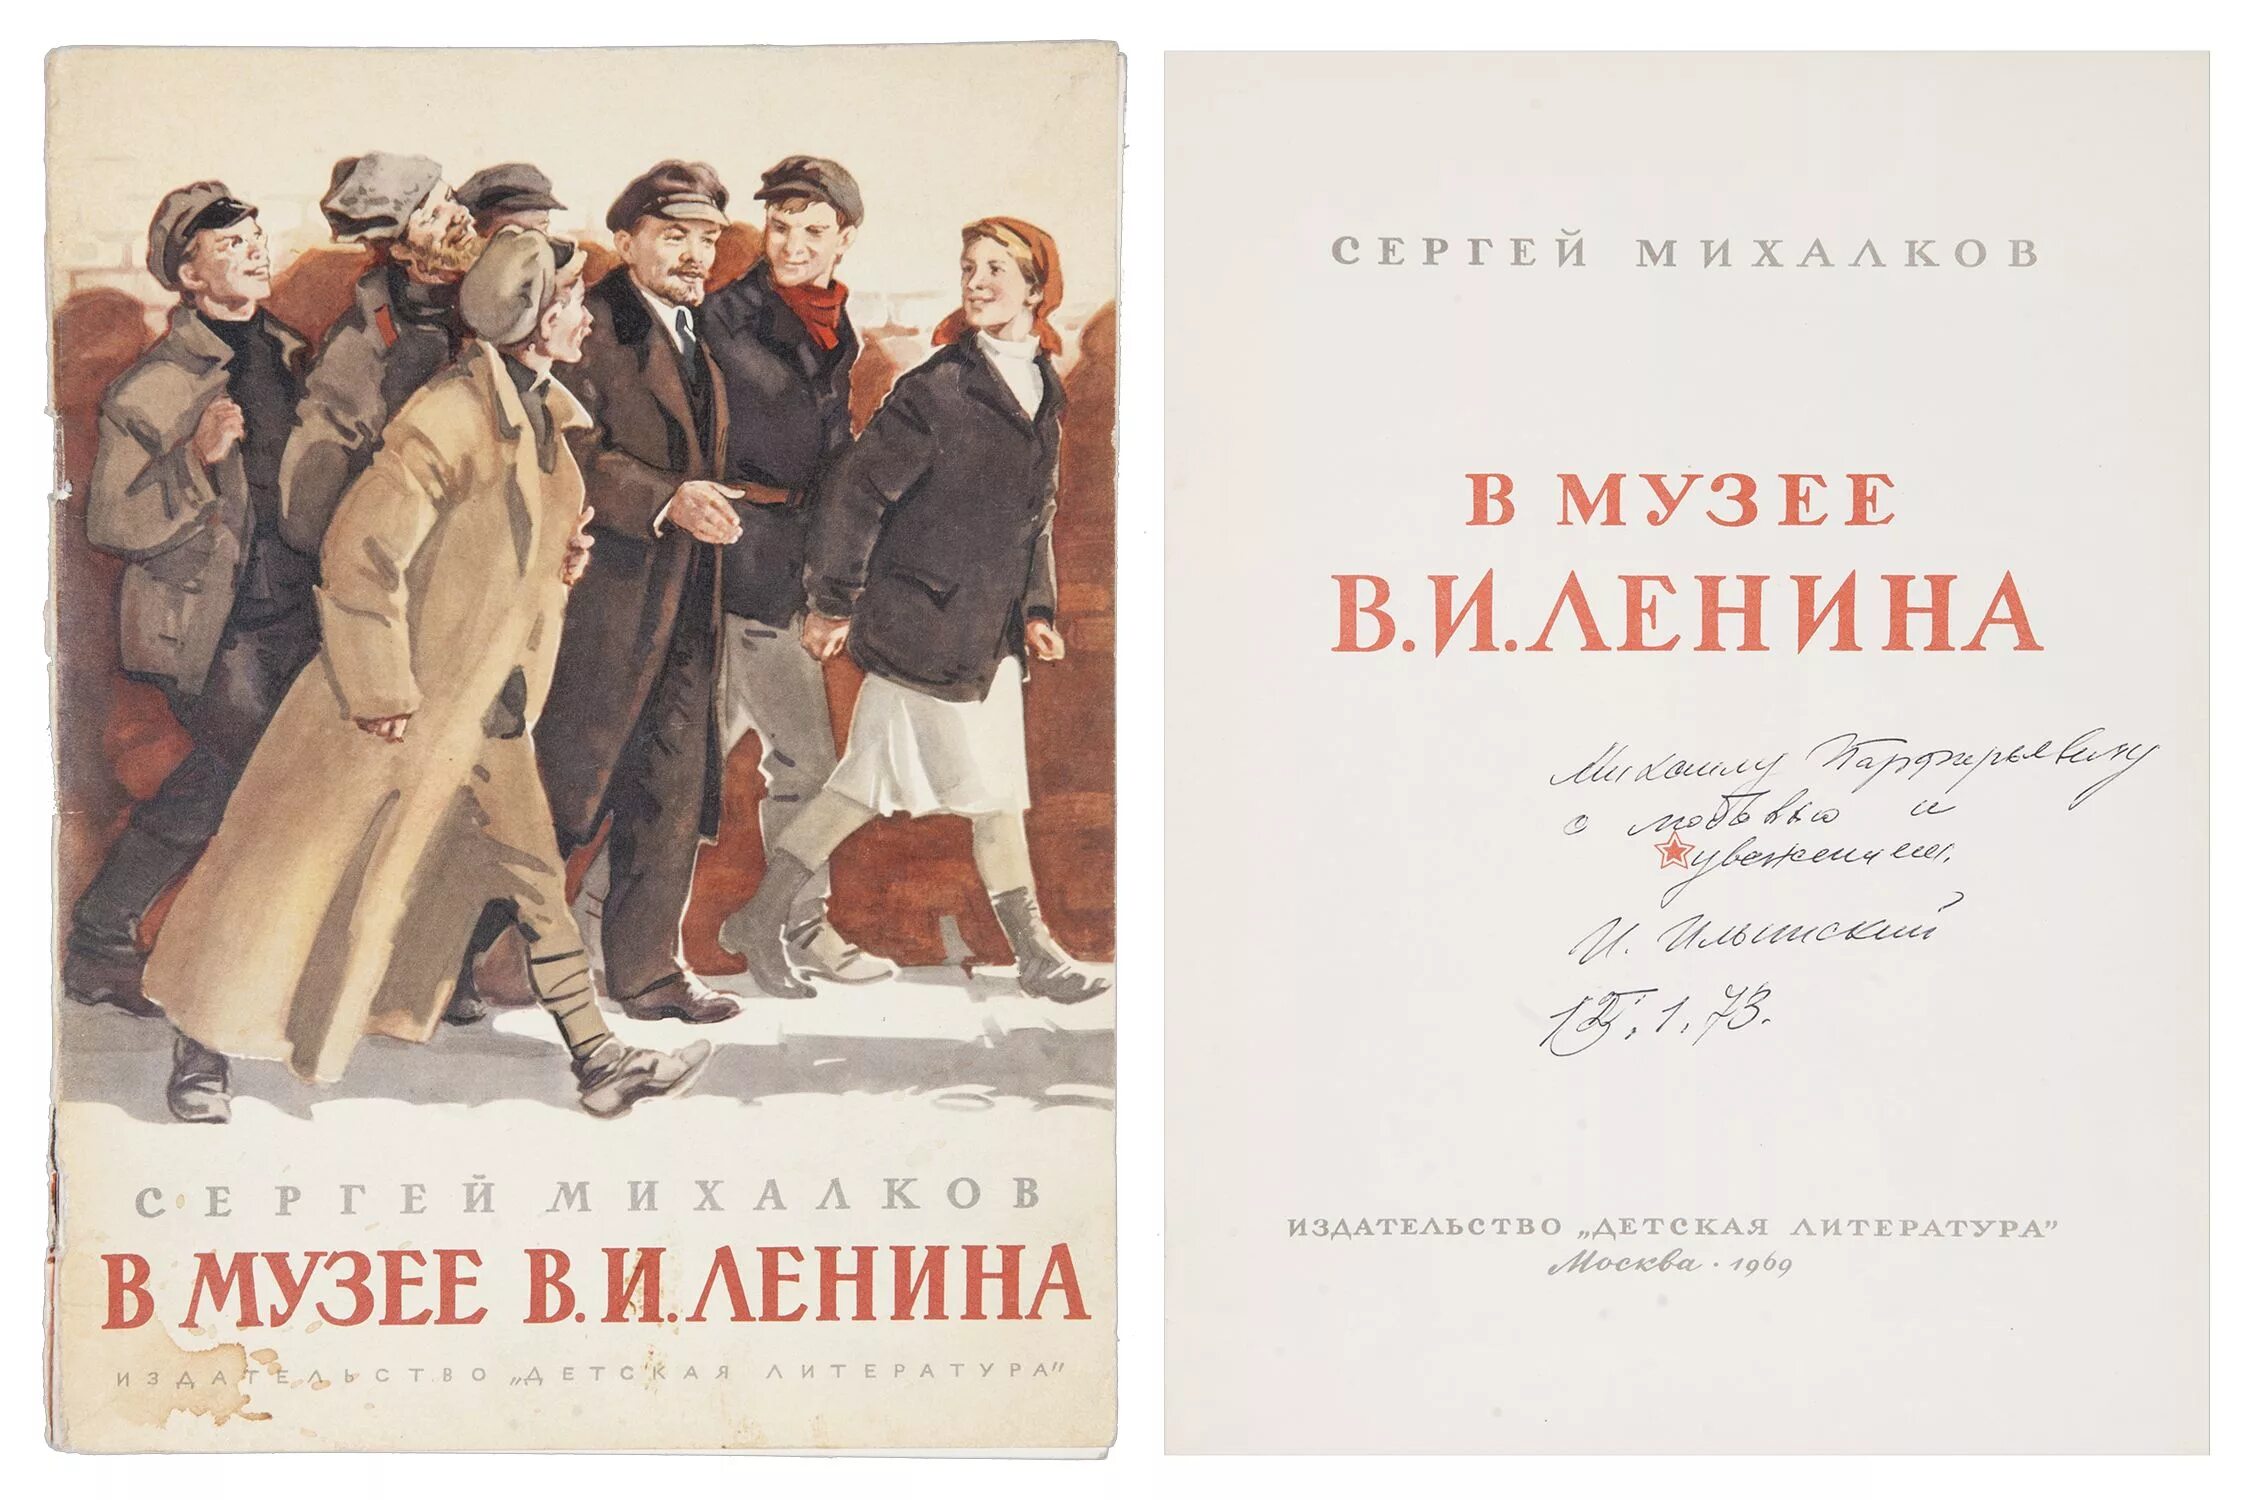 Стихотворение я поведу тебя в музей сказала. Книга в музее Ленина Михалков. Михалков в музее Ленина иллюстрации Ильинский. В музее Ленина стихотворение Михалкова.